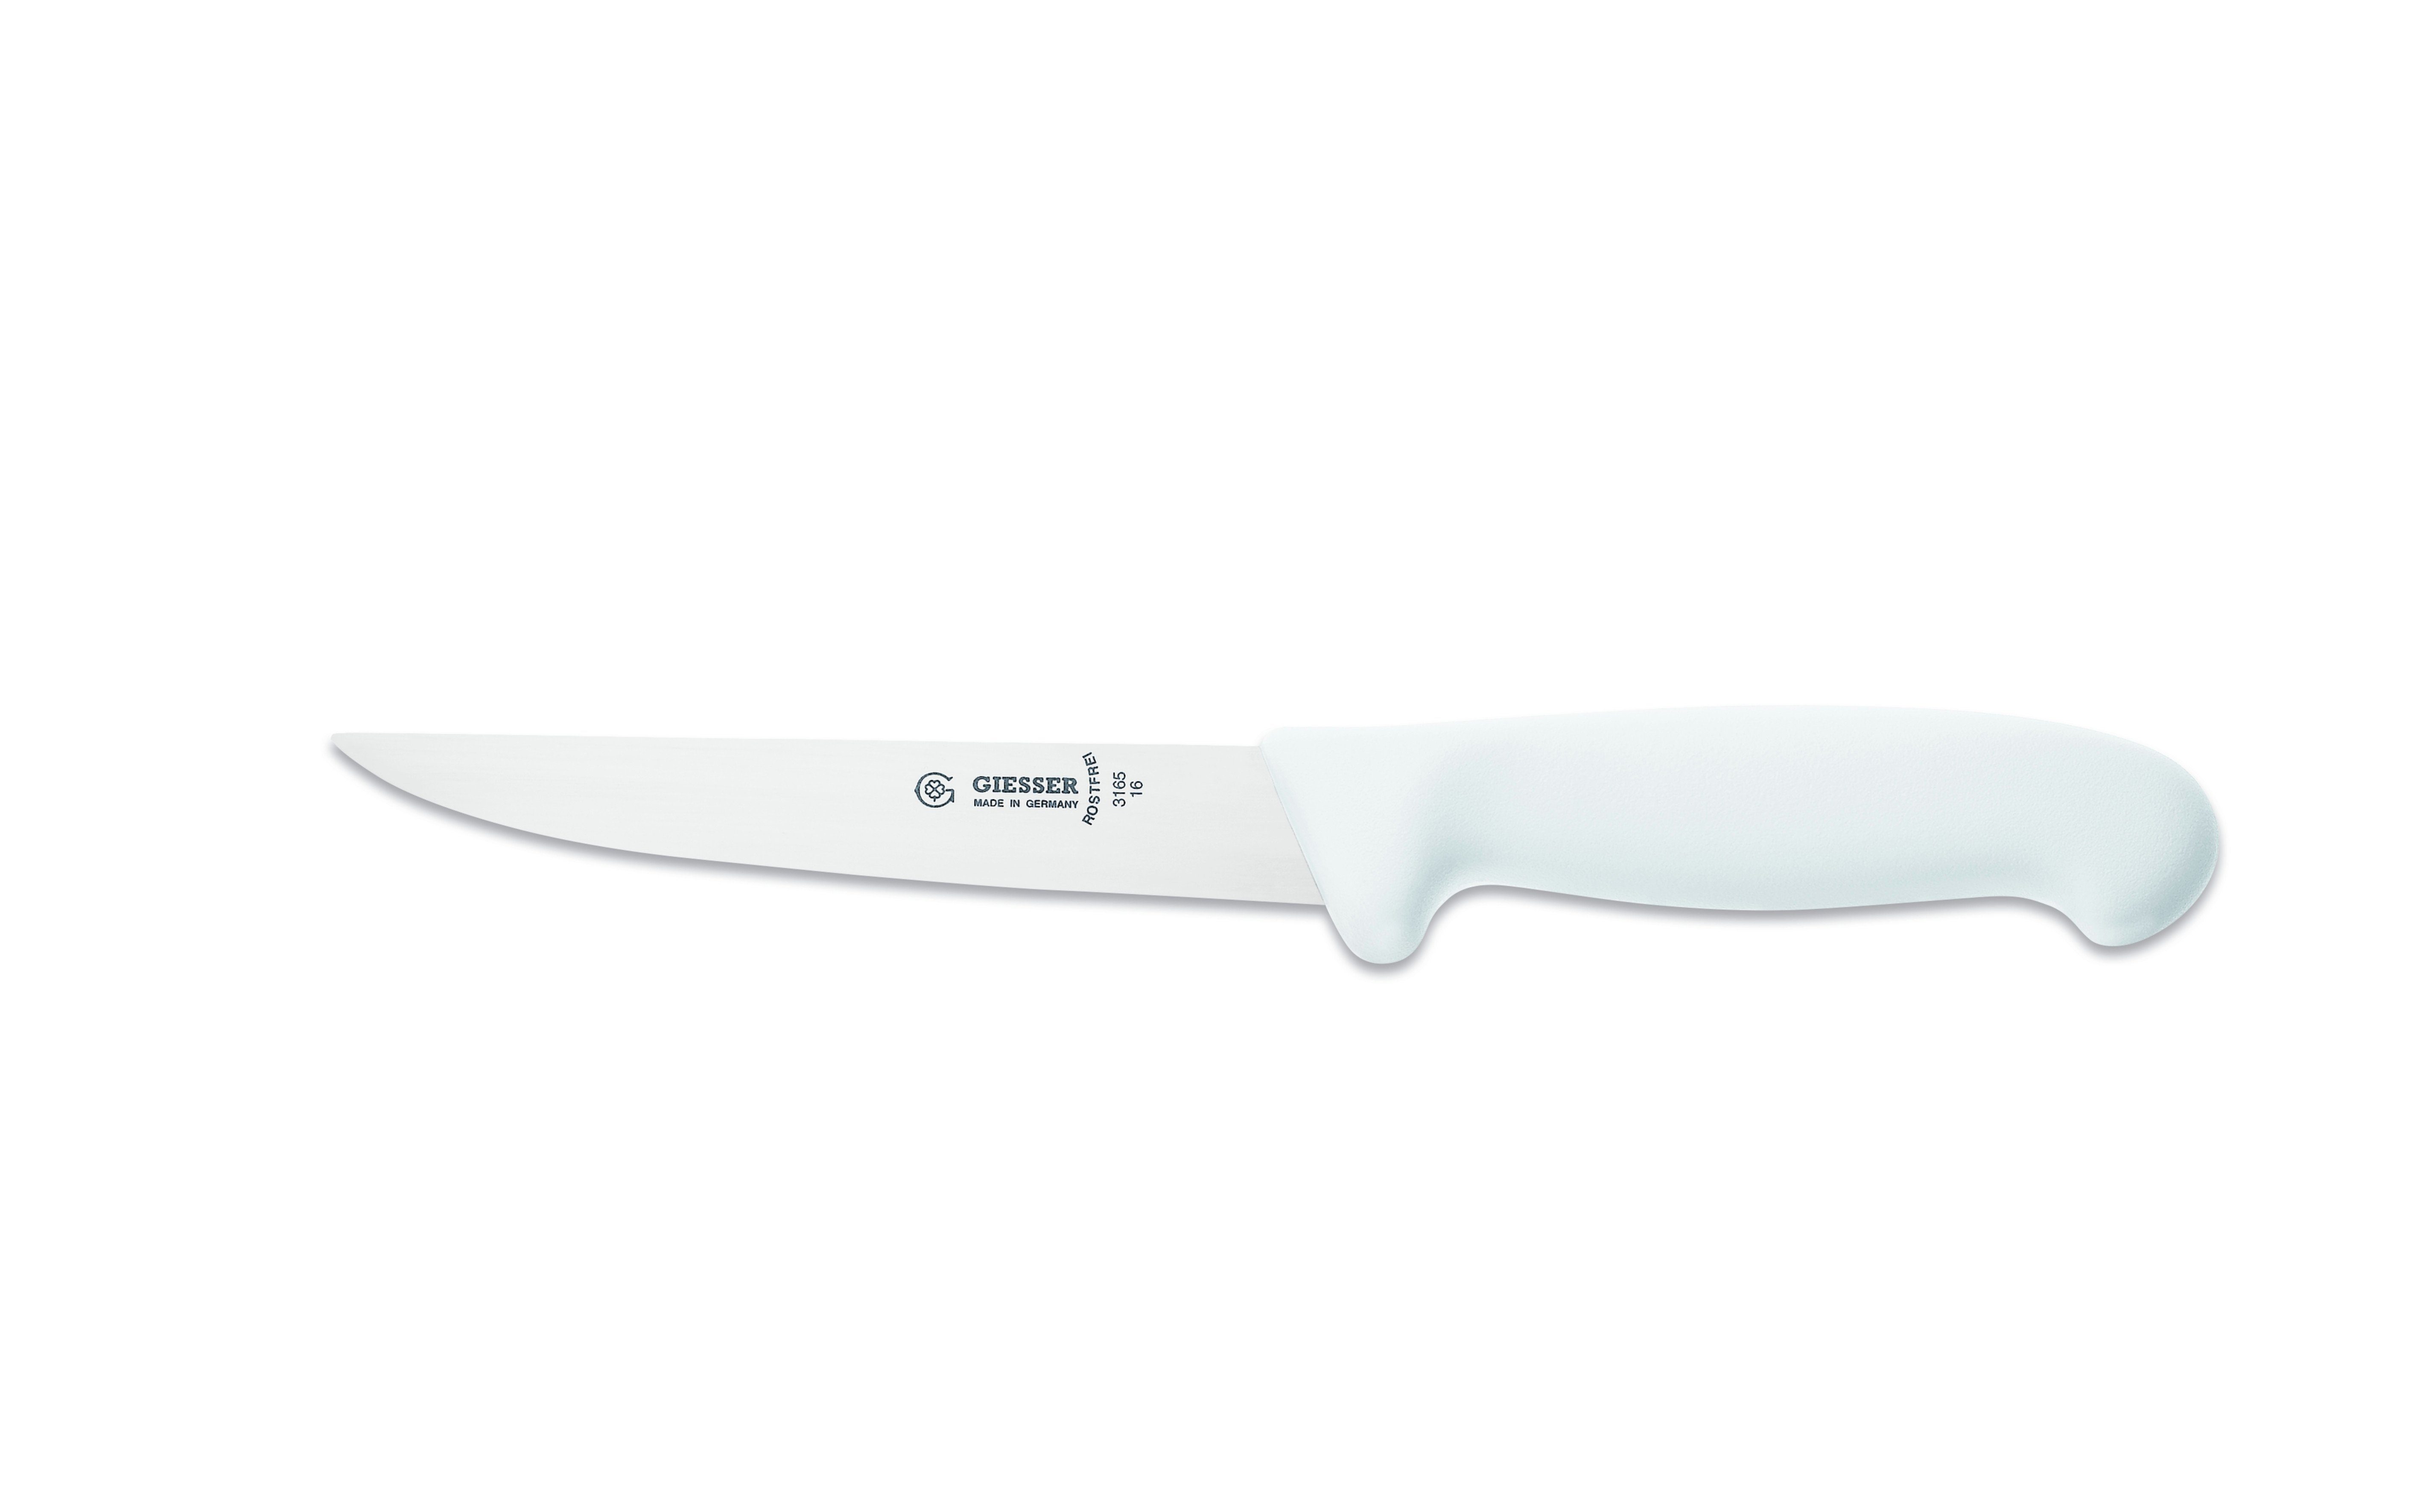 scharf 12/14/16/18, Ausbeinmesser stark, Weiß Giesser Messer Klinge, 3165 gerade Variante